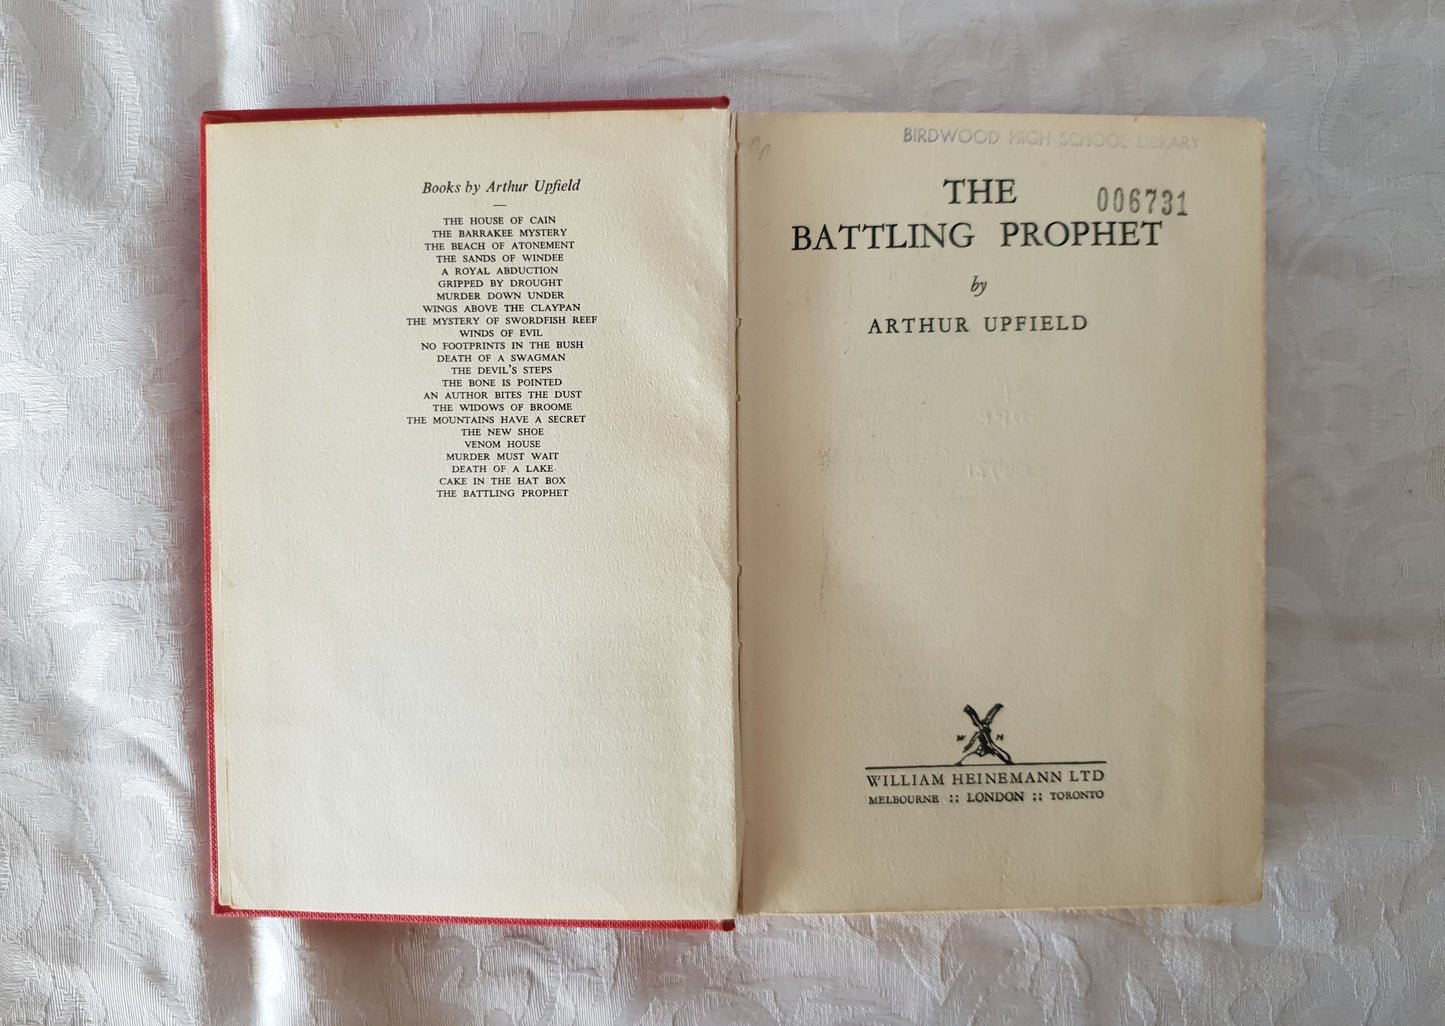 The Battling Prophet by Arthur Upfield